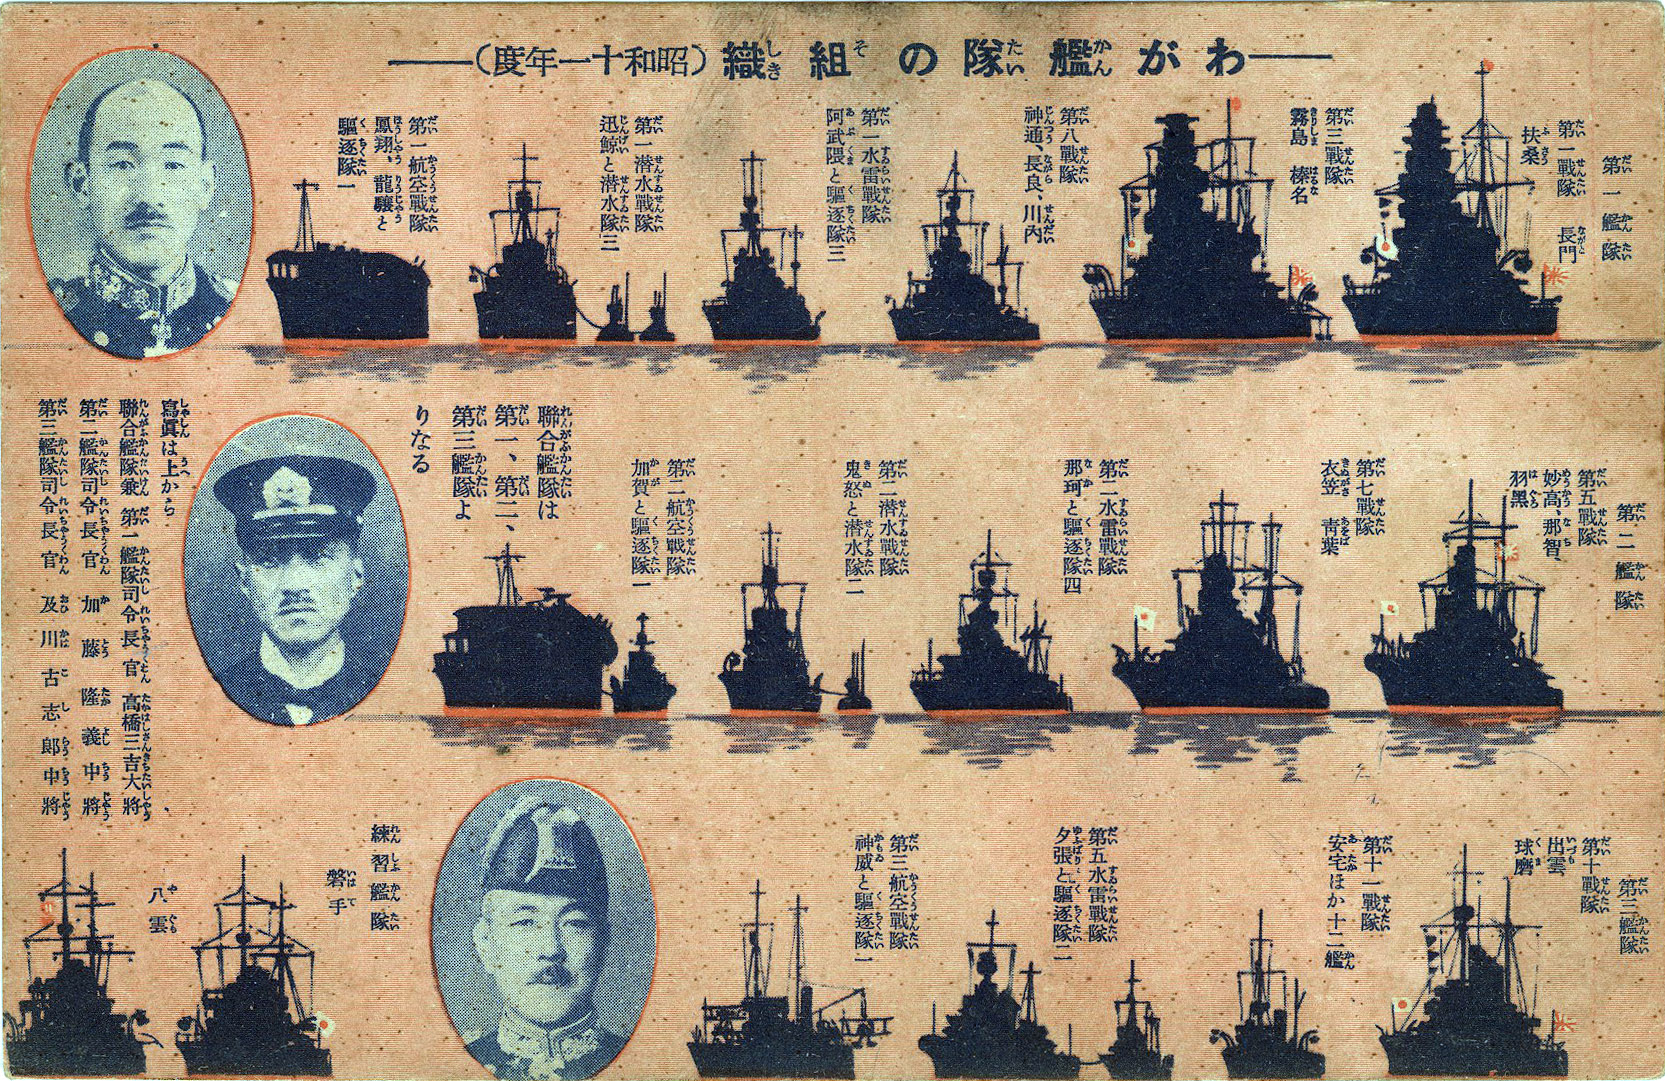 Imperial Japanese Navy Fleet Commanders, 1936. | Old TokyoOld Tokyo